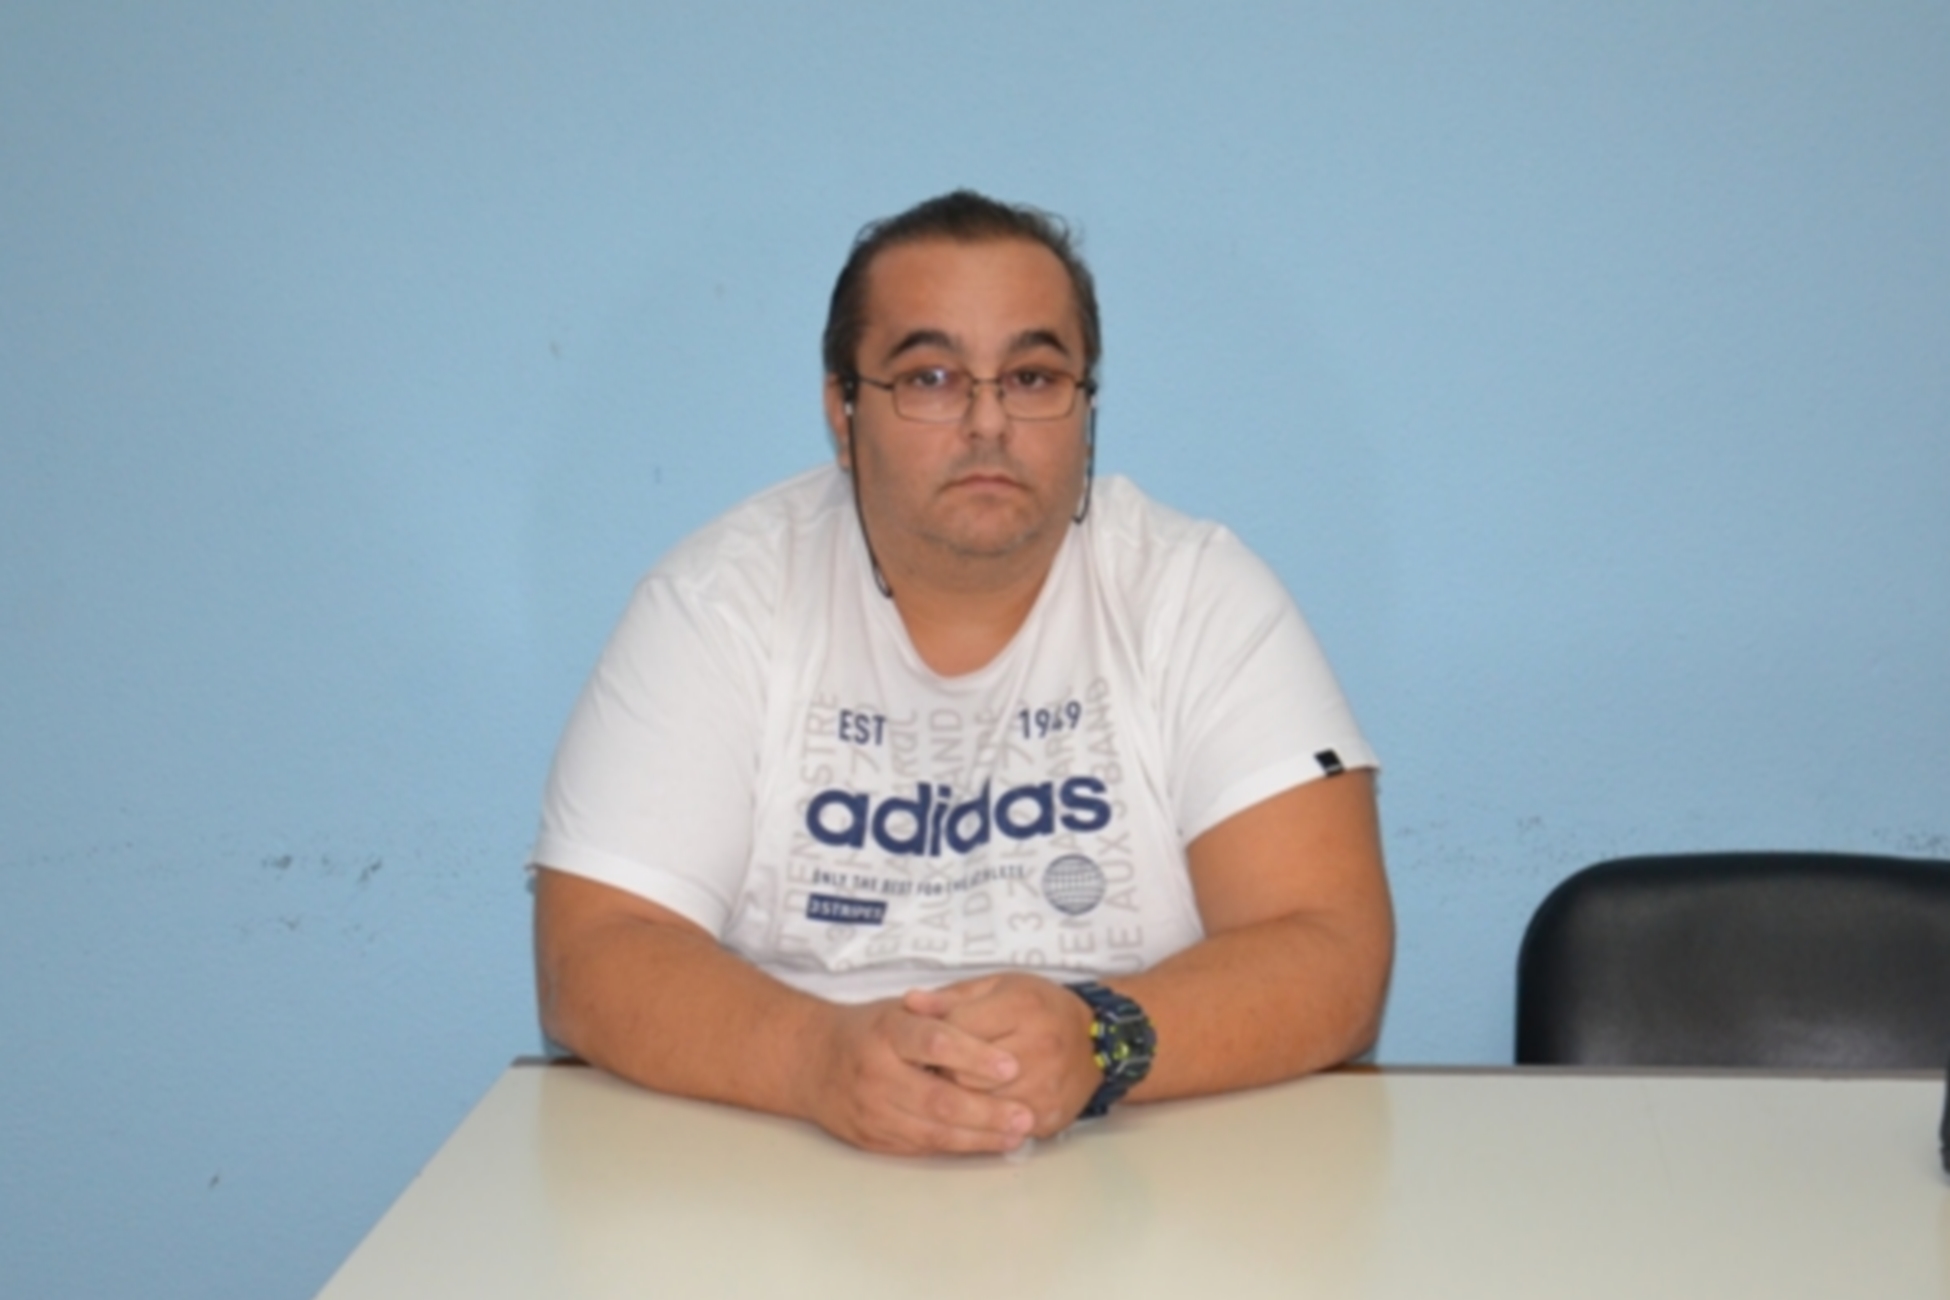 Πέθανε από κορονοϊό ο προπονητής Χρήστος Γκότας στα Τρίκαλα – Ήταν πλήρως εμβολιασμένος